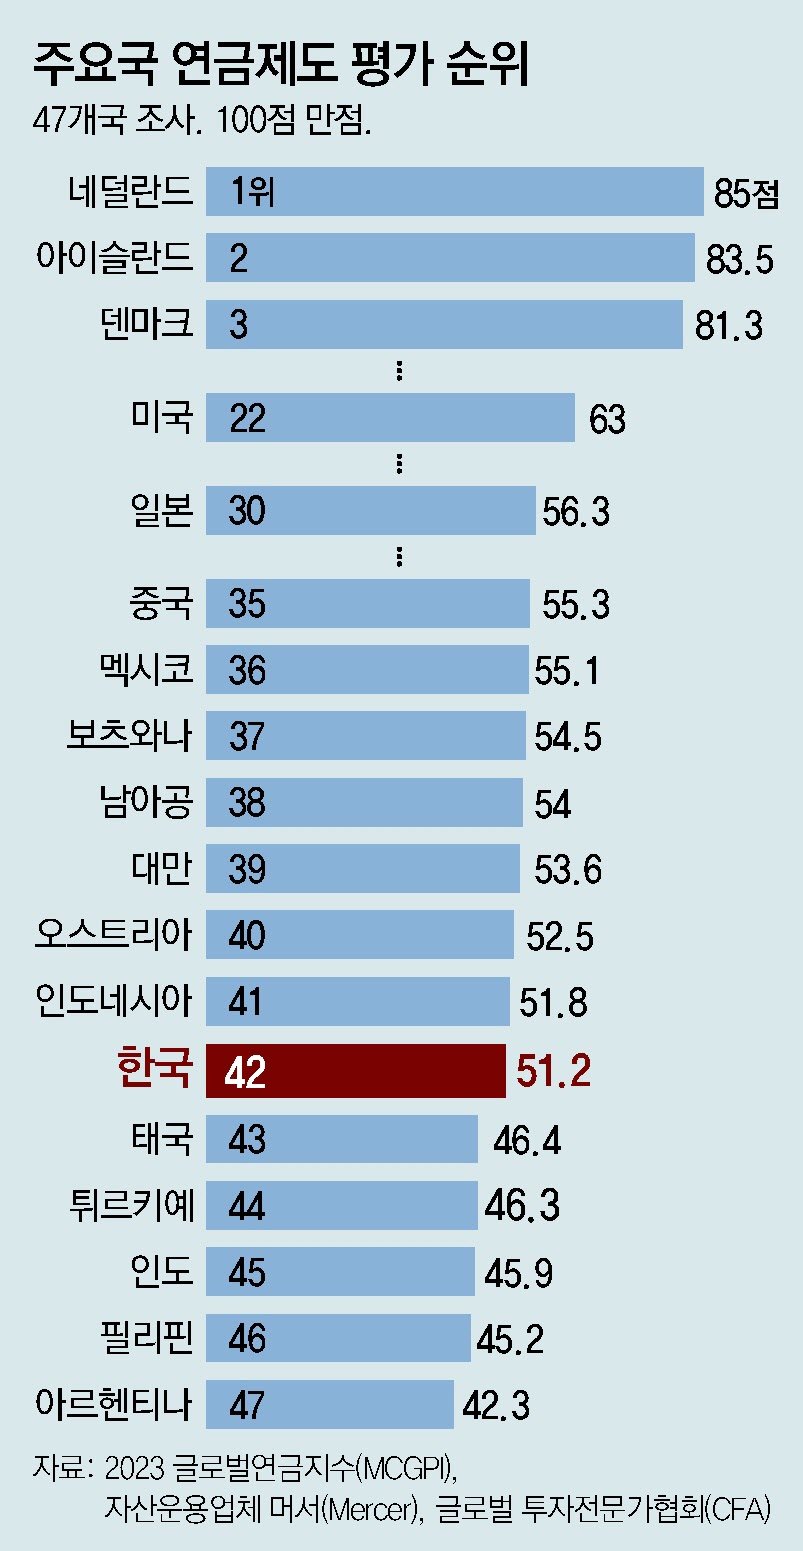 “韓 연금제도 47개국중 42위… ‘납입자 혜택’ 적정성 최하위”